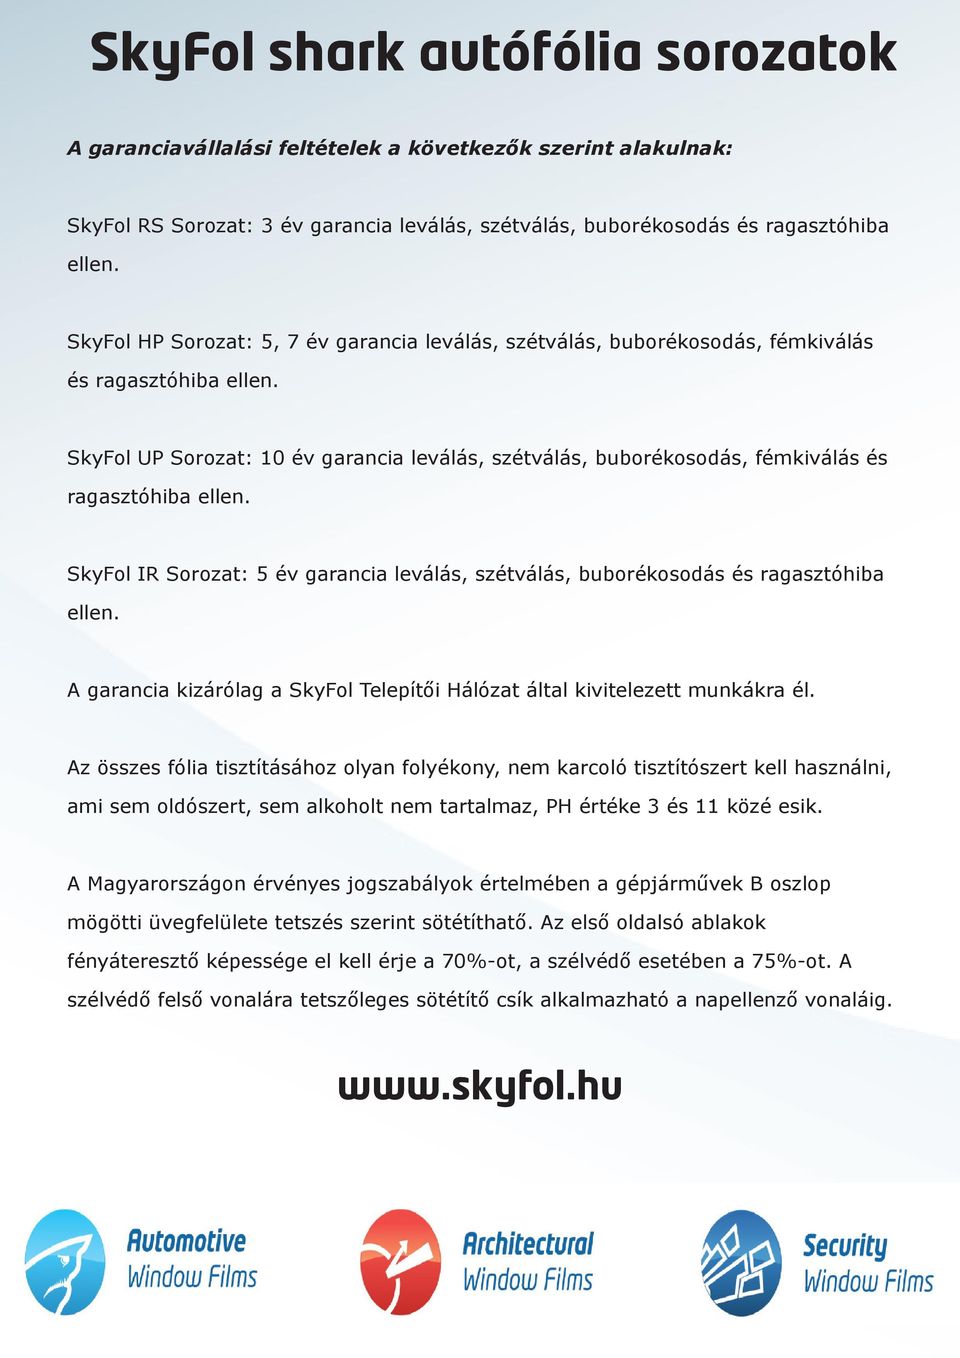 SkyFol UP Sorozat: 10 év garancia leválás, szétválás, buborékosodás, fémkiválás és ragasztóhiba ellen. SkyFol IR Sorozat: 5 év garancia leválás, szétválás, buborékosodás és ragasztóhiba ellen.